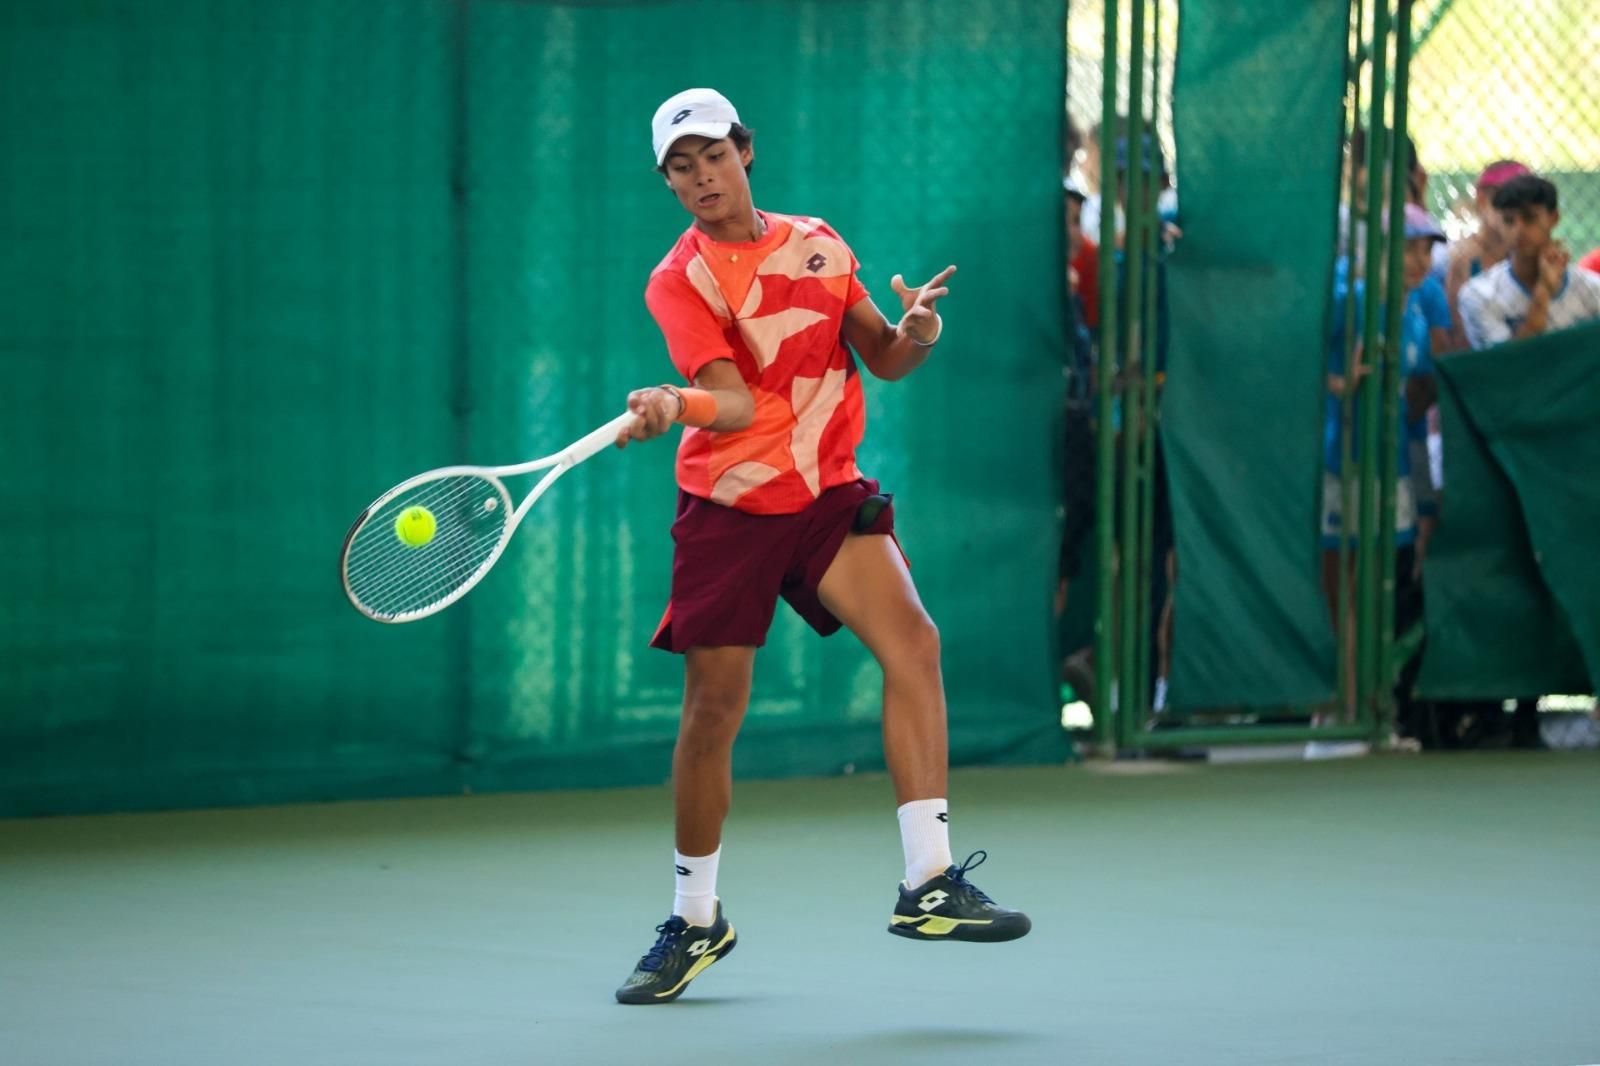 Ténis: Djokovic avança para os quartos de final do ATP 500 do Dubai